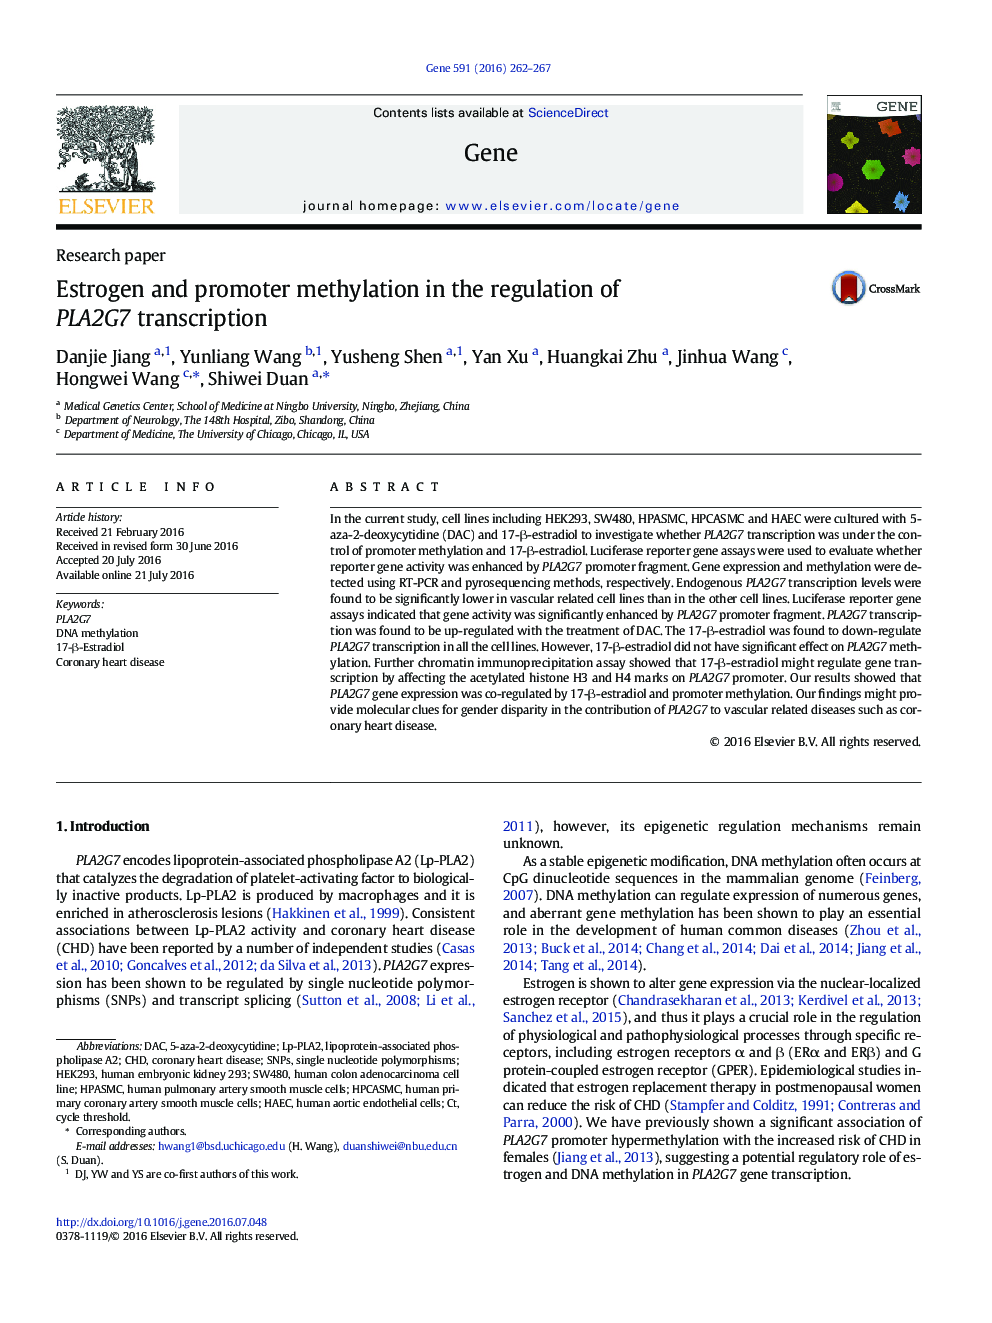 Estrogen and promoter methylation in the regulation of PLA2G7 transcription